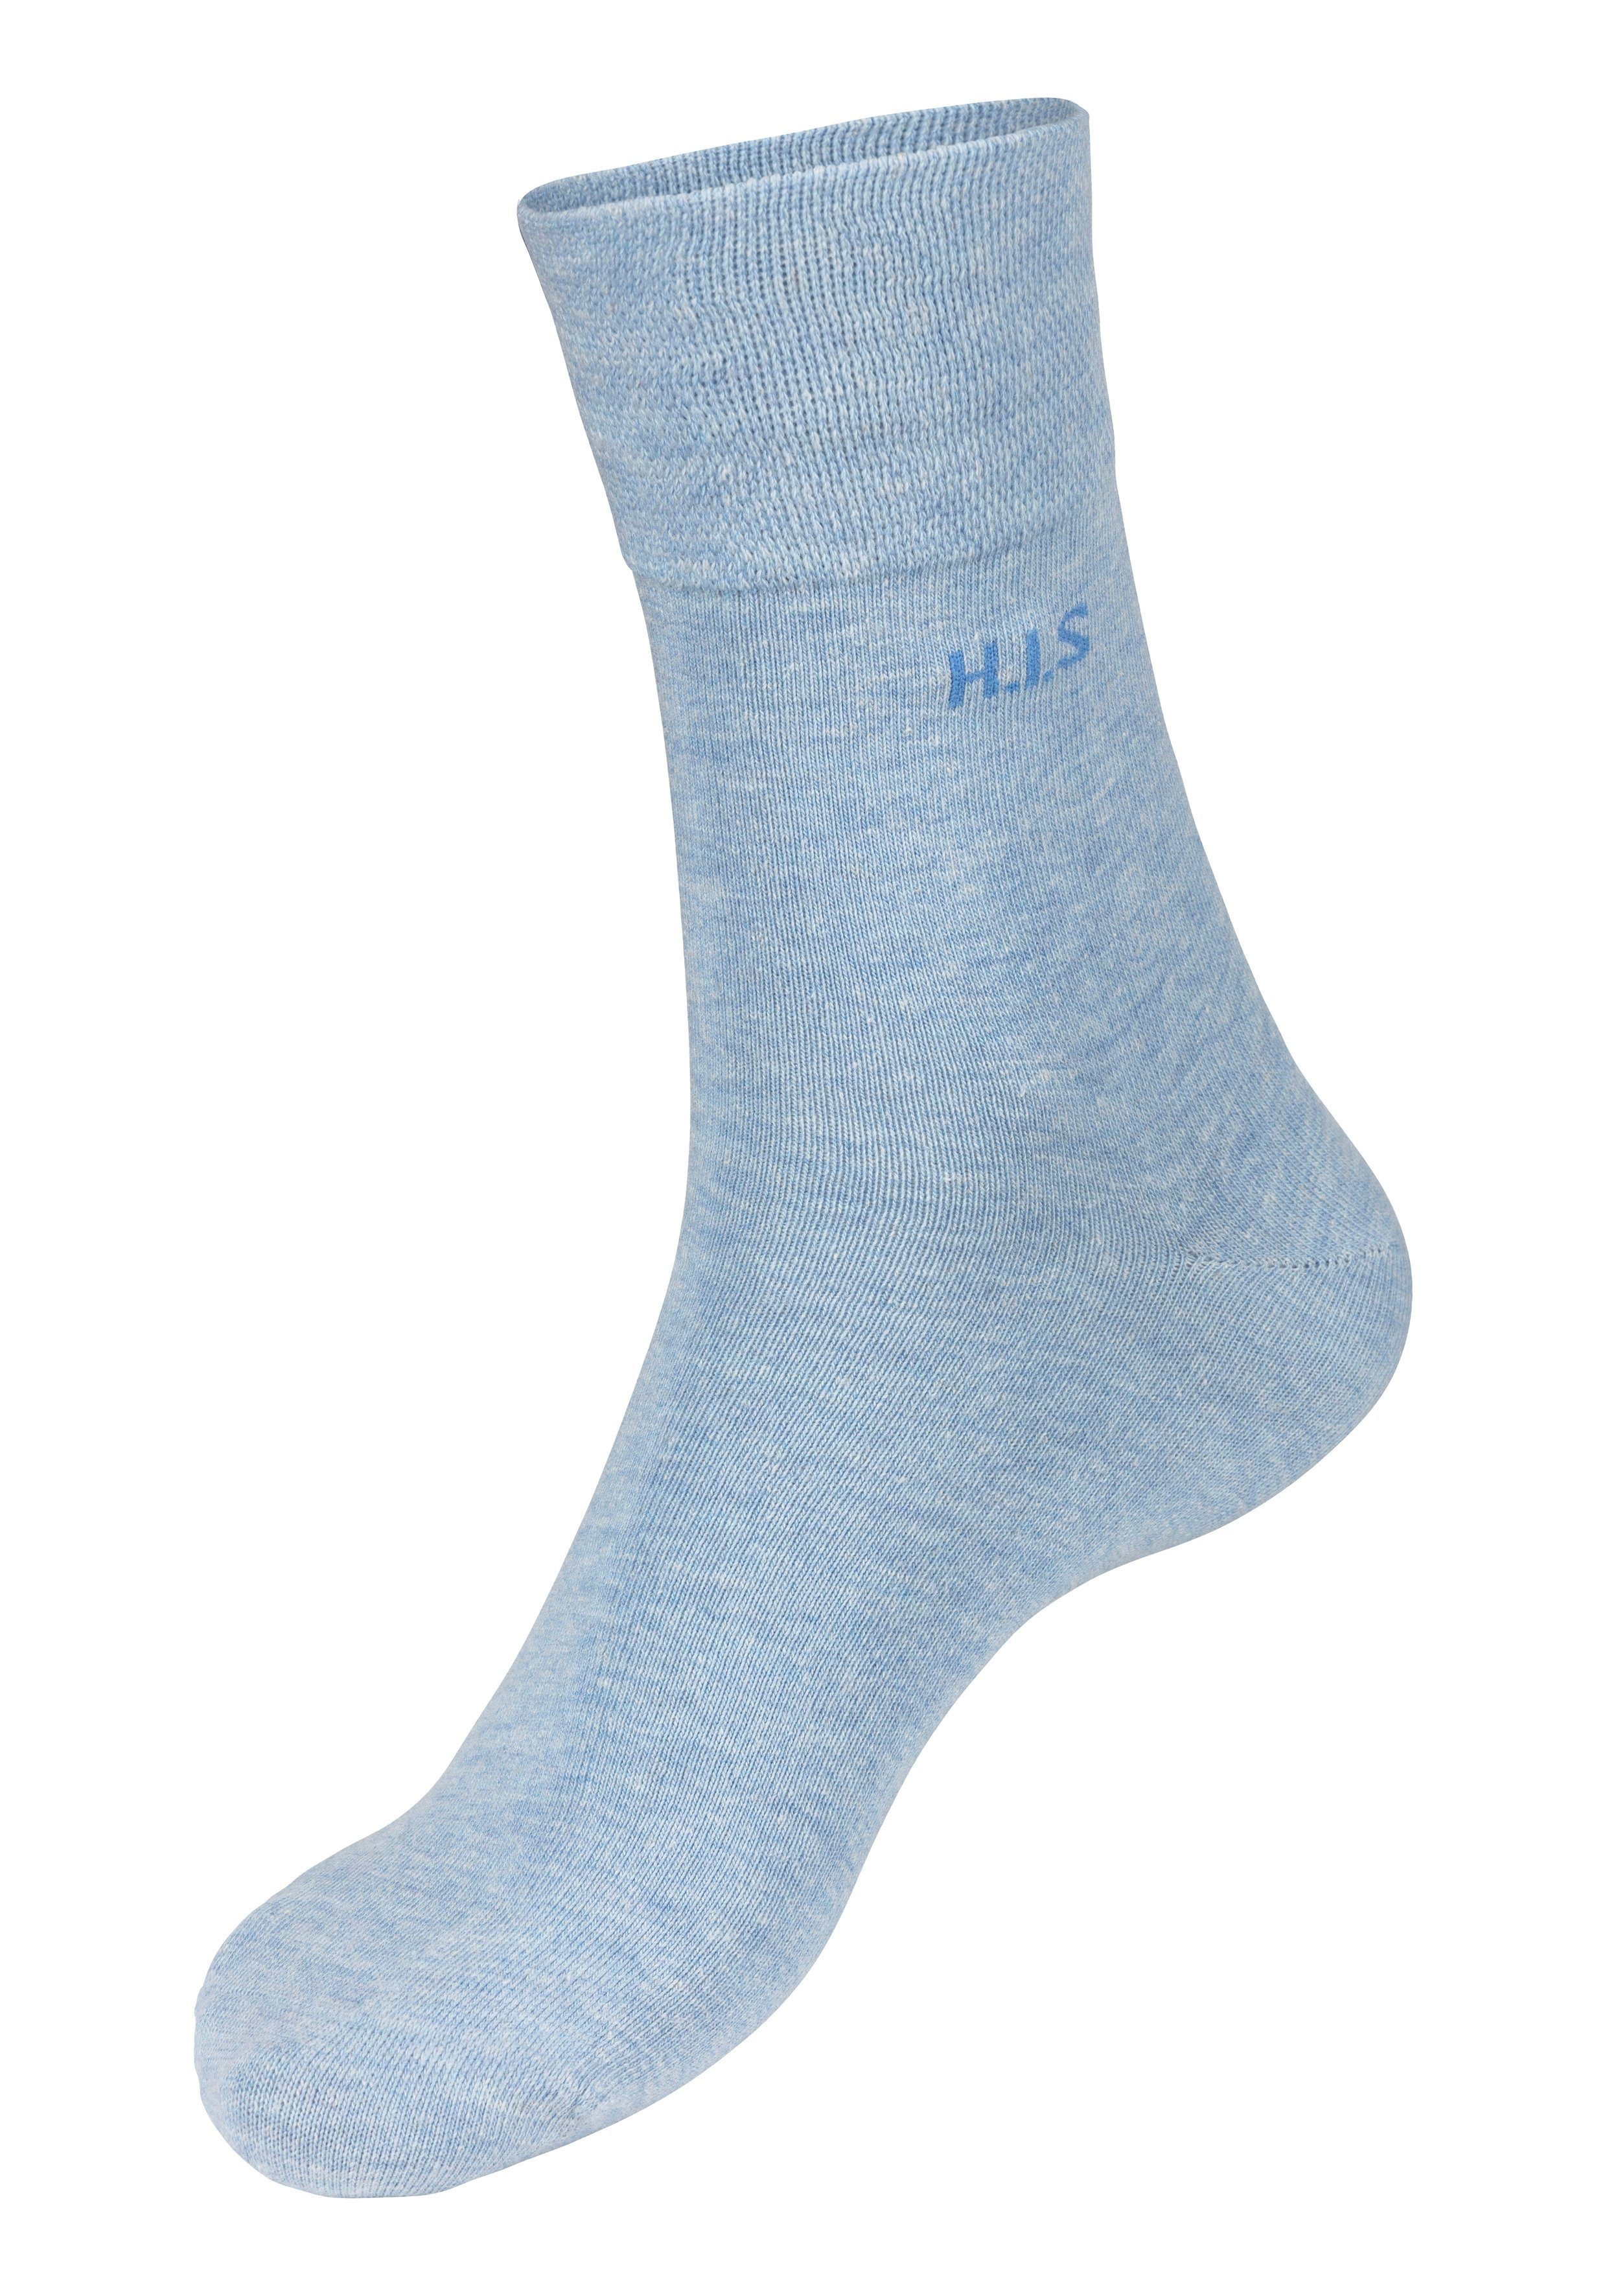 dunkel 12-Paar) Socken navy, ohne H.I.S jeansblau-meliert, jeans-meliert Gummi einschneidendes 4x 4x (Packung, 4x